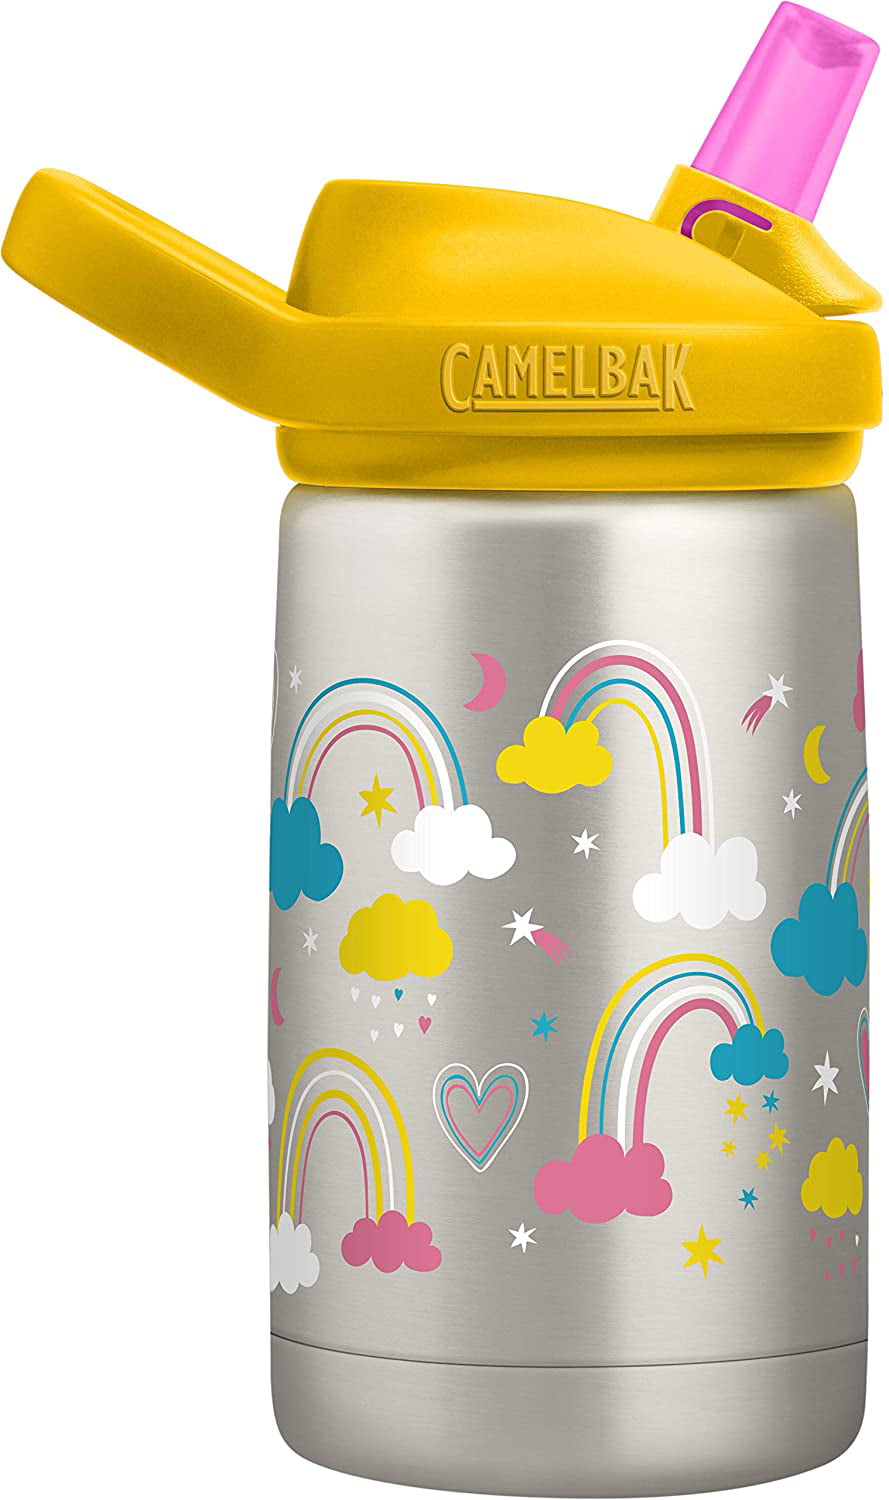 CamelBak Kids Eddy+ Insulated Stainless Steel 12oz Bottle